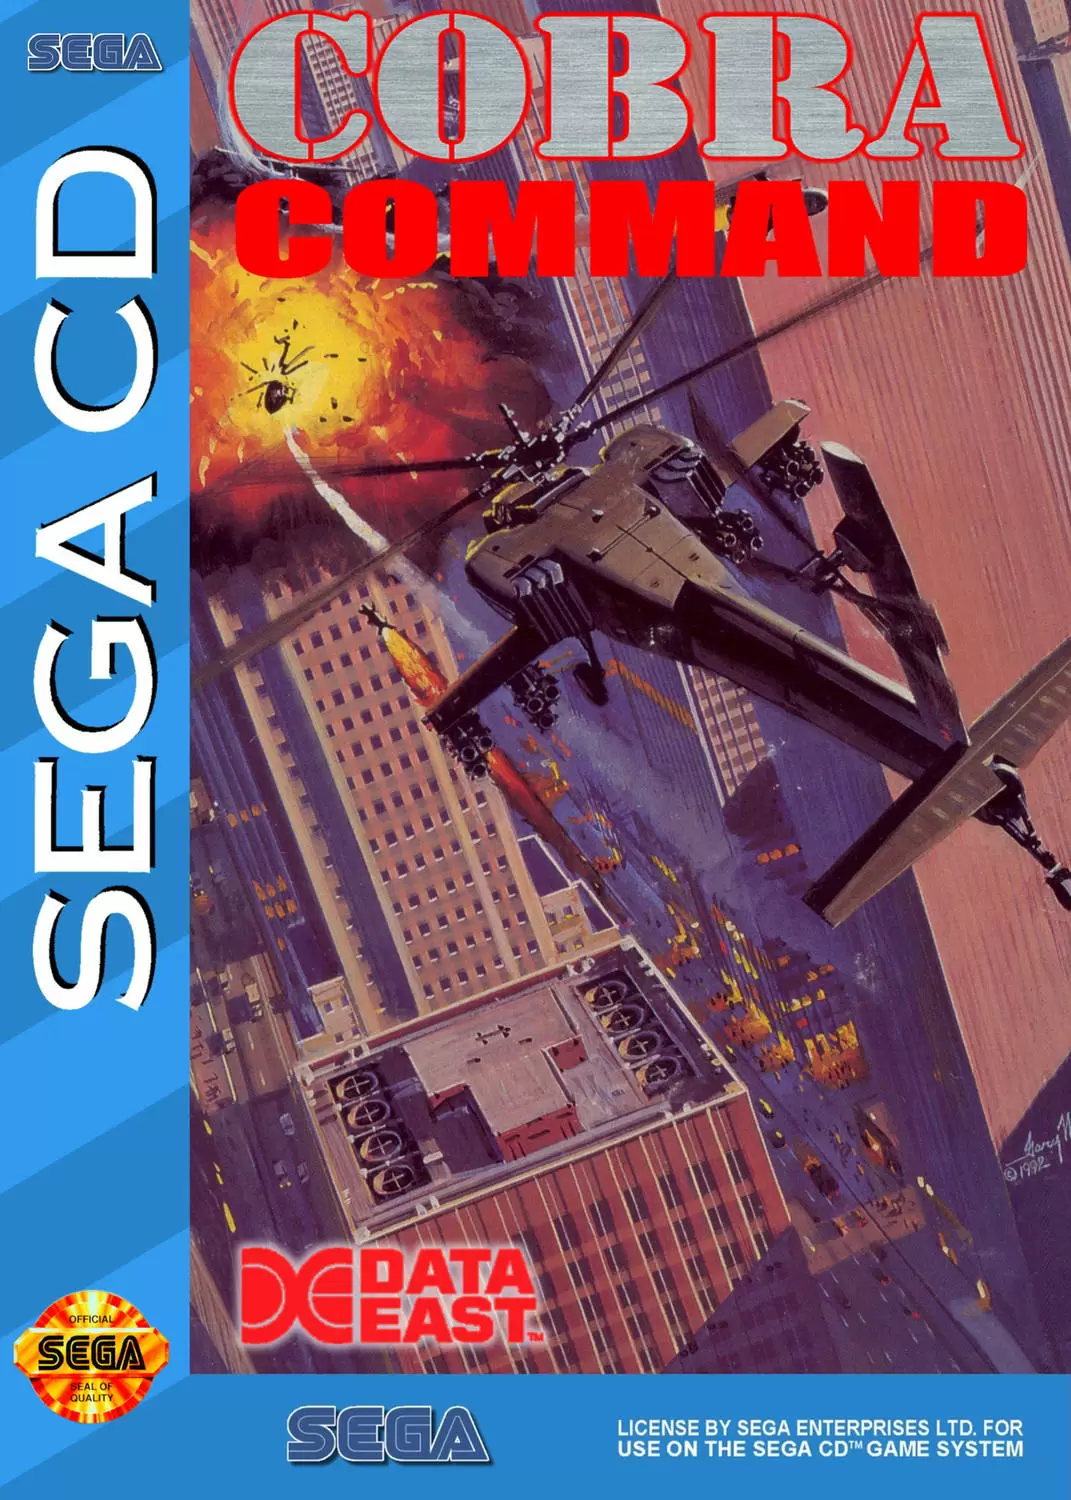 SEGA Mega CD Games - Cobra Command